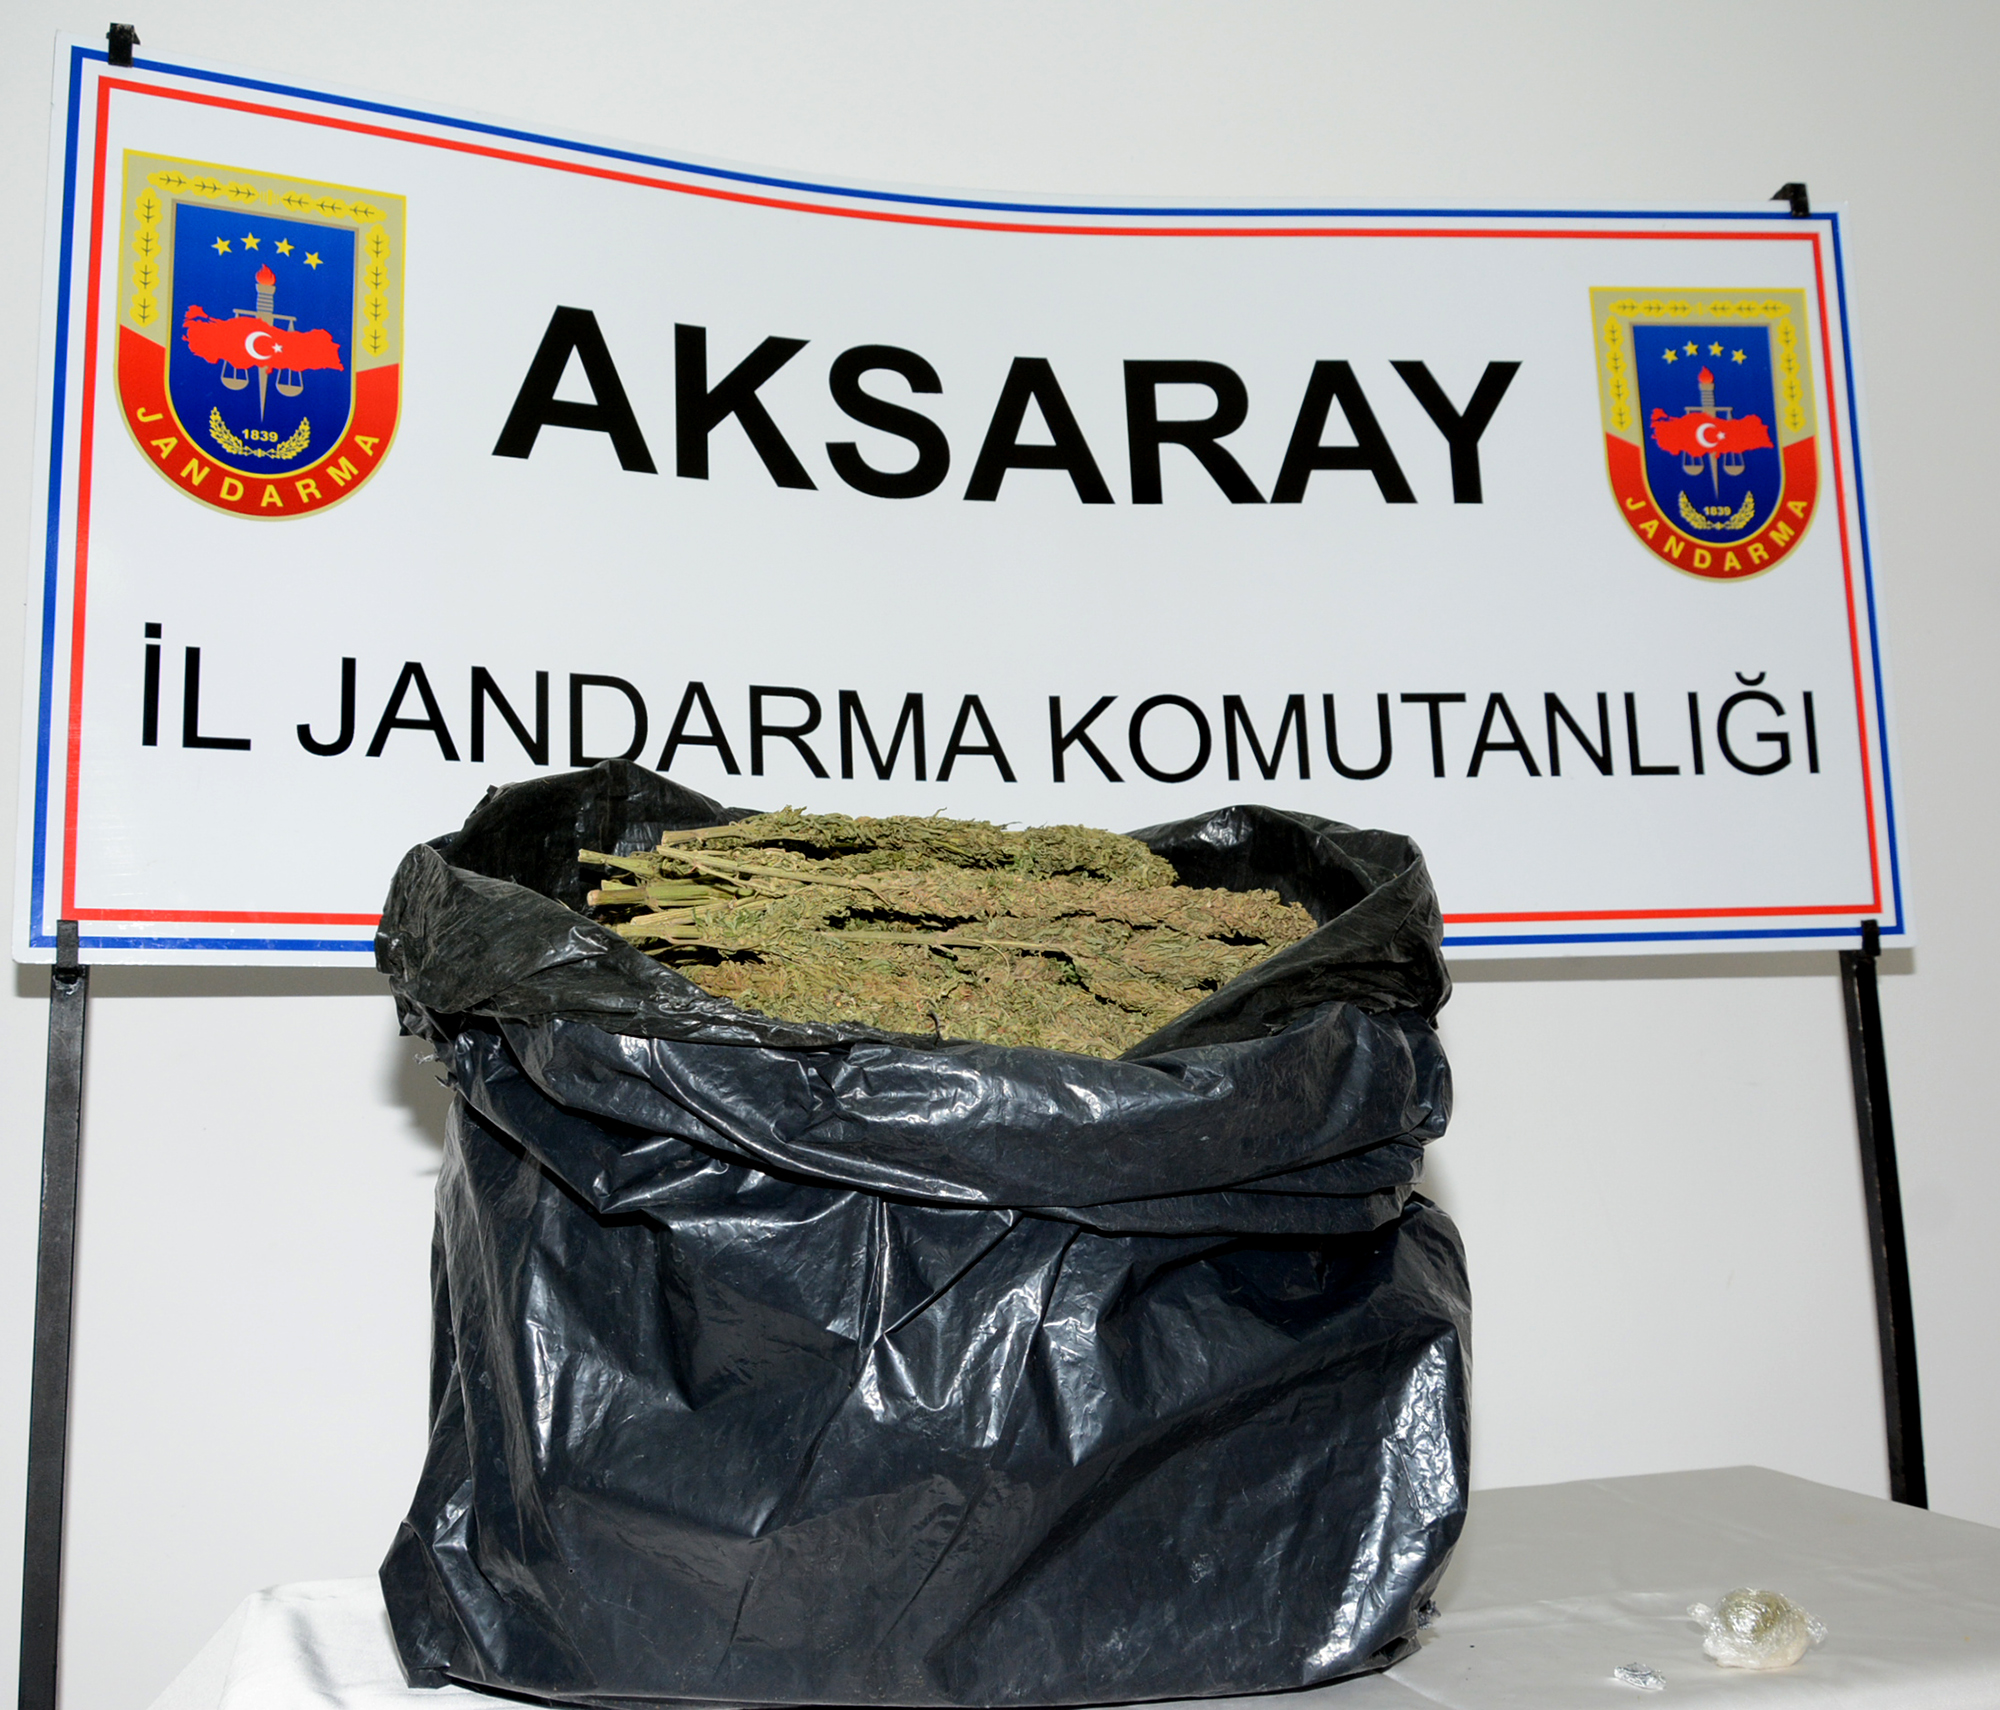 Aksaray’da Jandarmadan uyuşturucu operasyonu